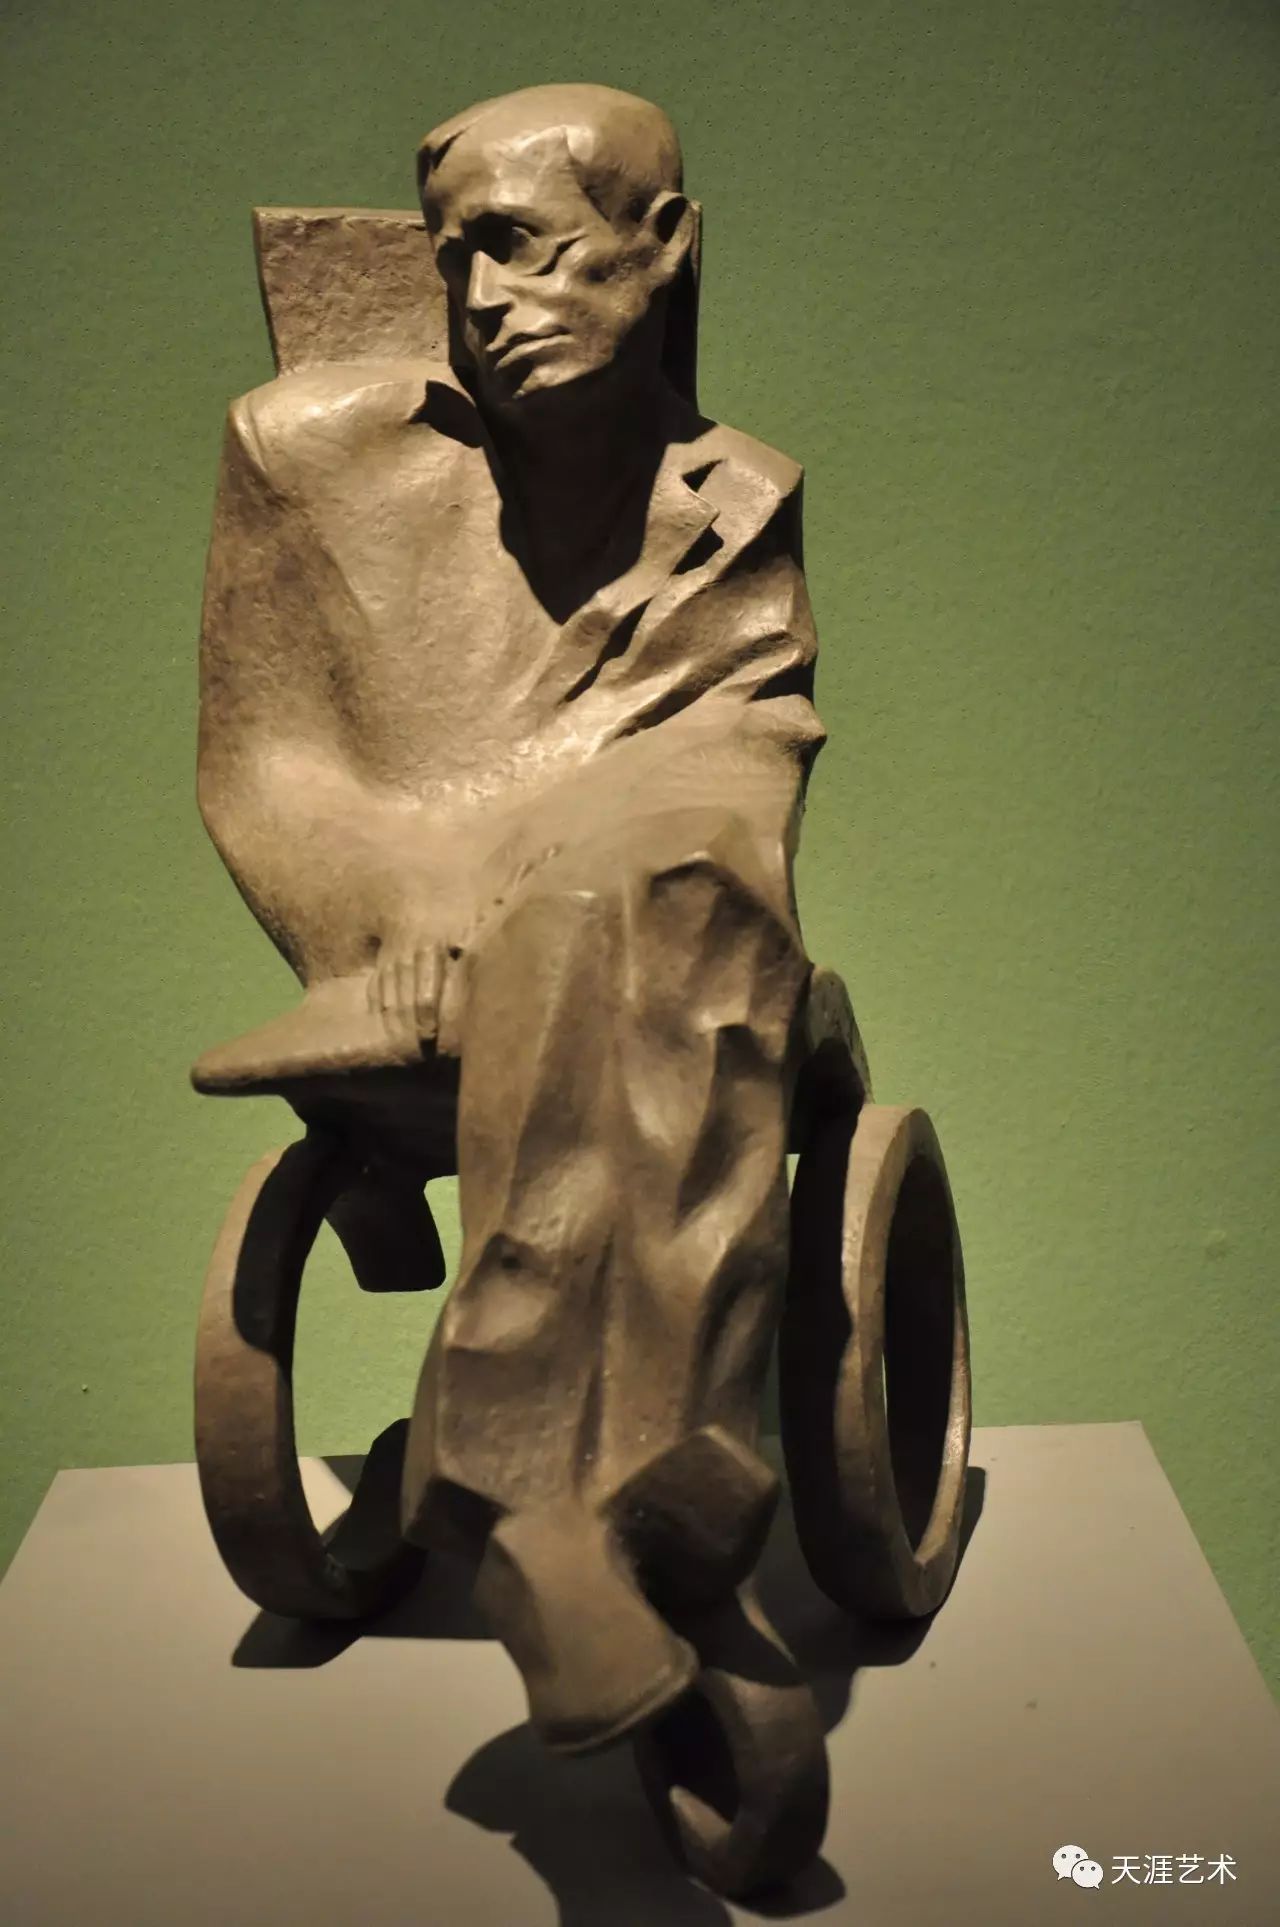 首届全国雕塑艺术大展作品选辑:重磅呈现中国雕塑百年